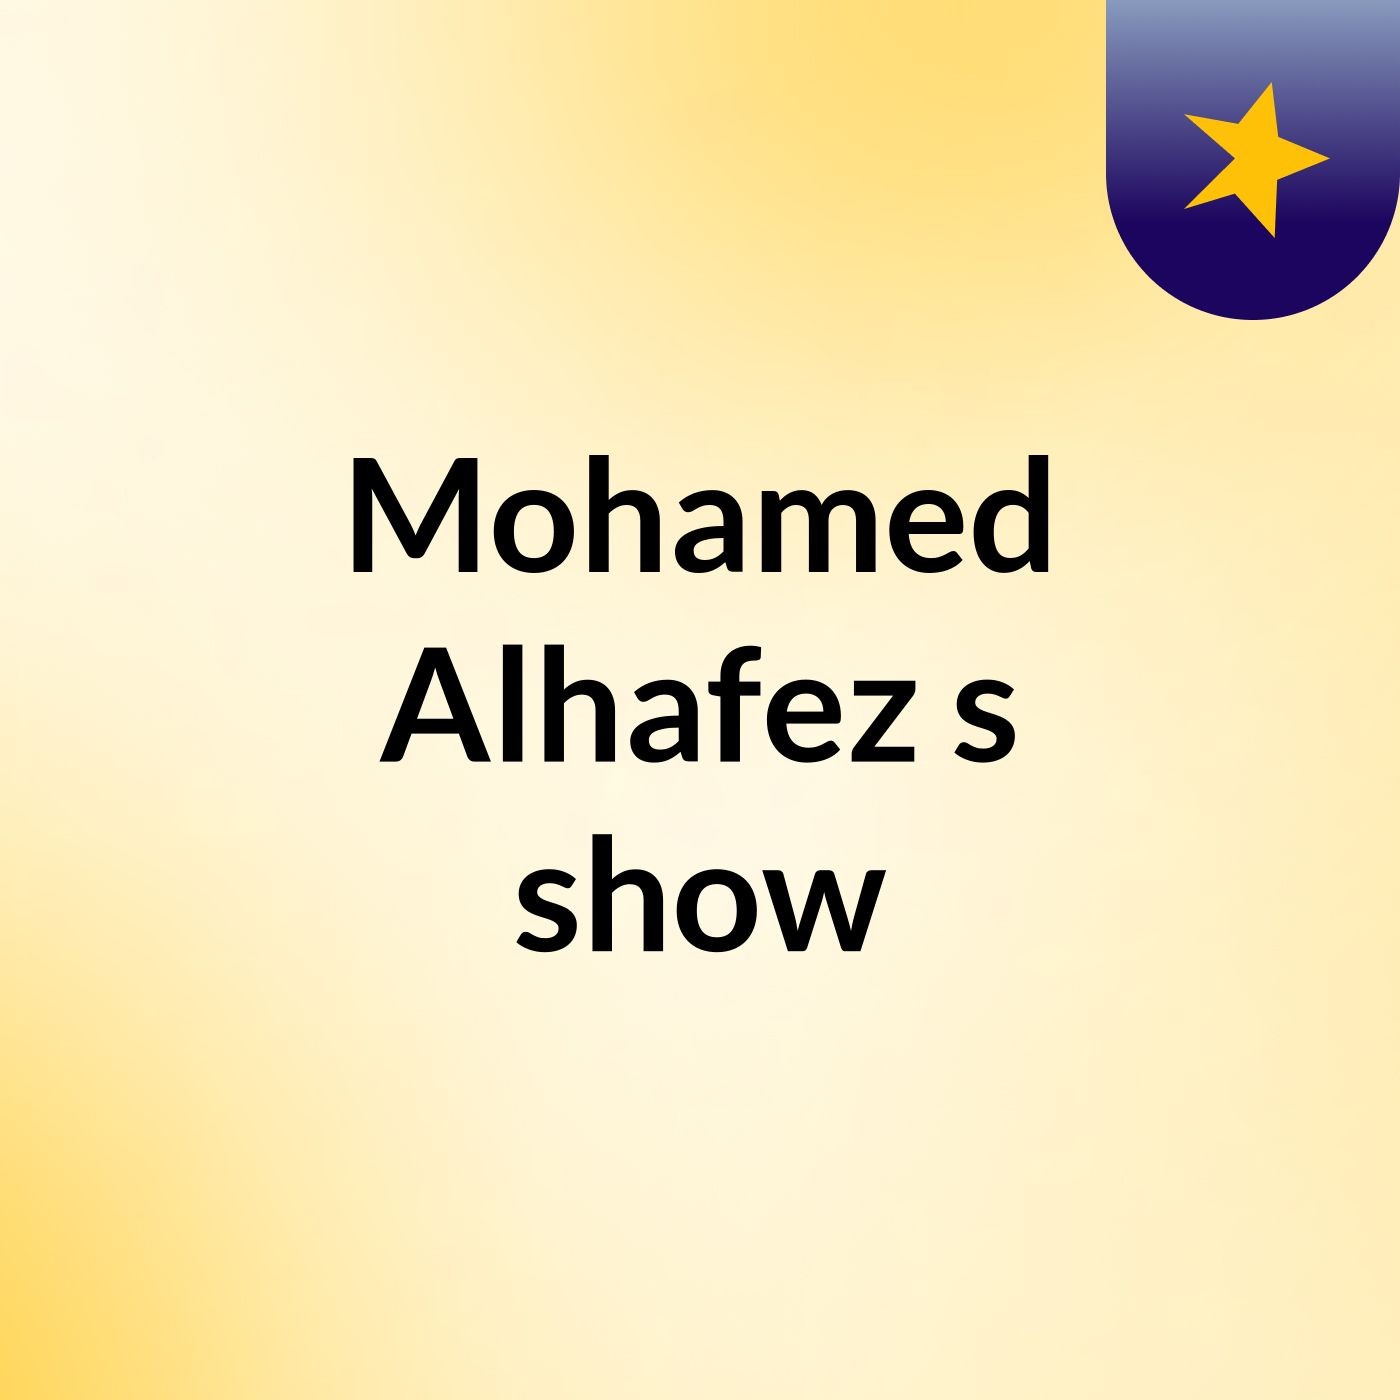 Mohamed Alhafez's show